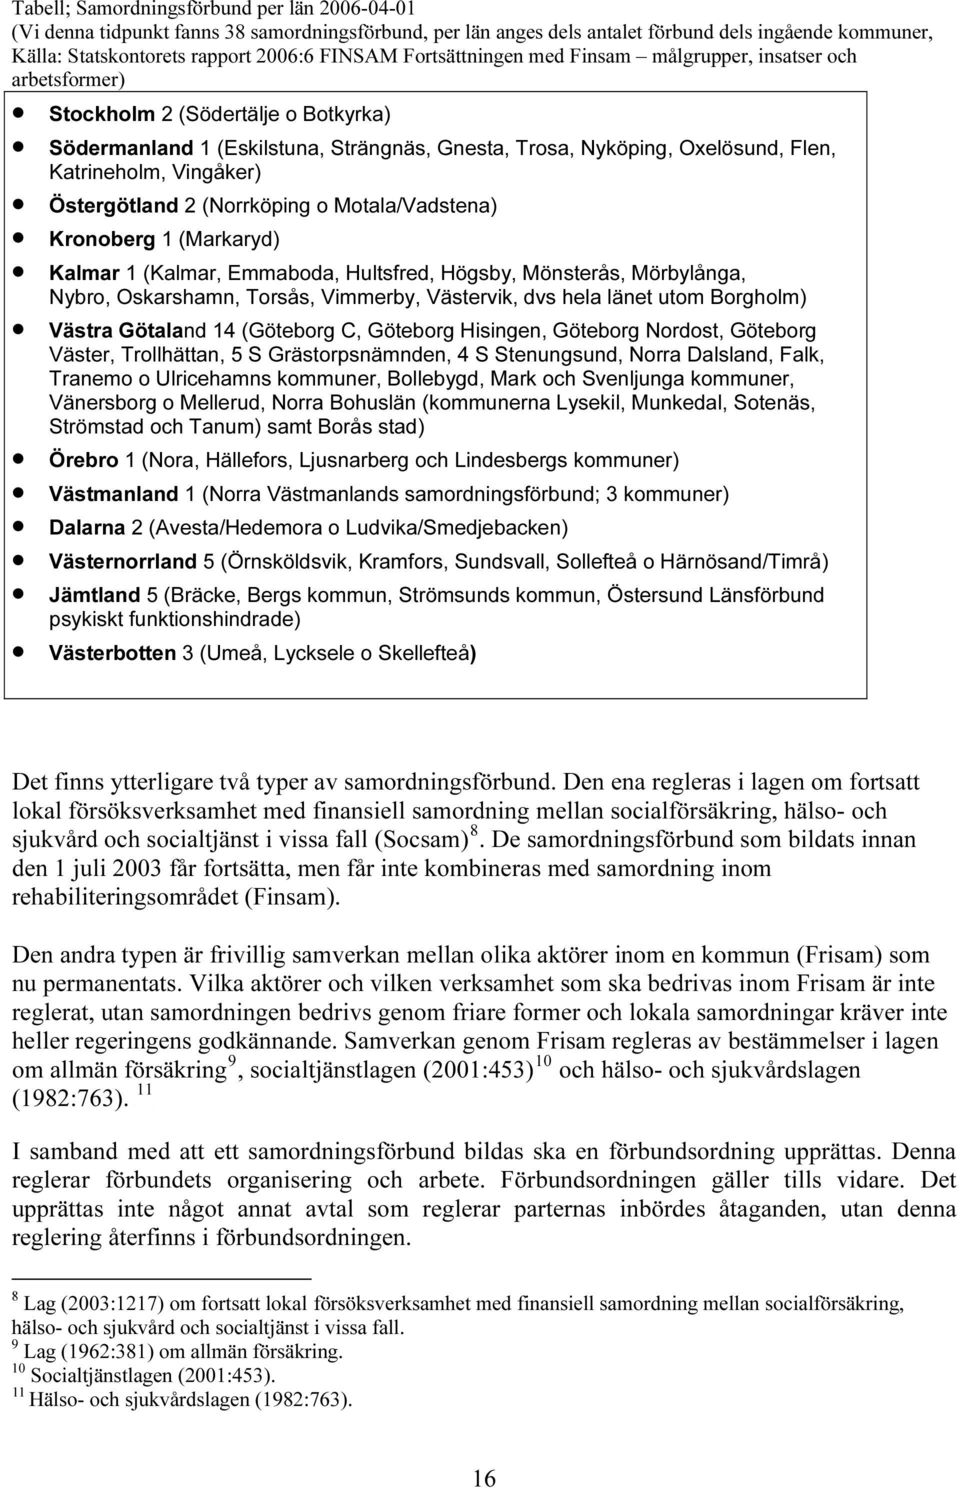 Gnesta, Trosa, Nyköping, Oxelösund, Flen, Katrineholm, Vingåker) Östergötland 2 (Norrköping o Motala/Vadstena) Kronoberg 1 (Markaryd) Kalmar 1 (Kalmar, Emmaboda, Hultsfred, Högsby, Mönsterås,